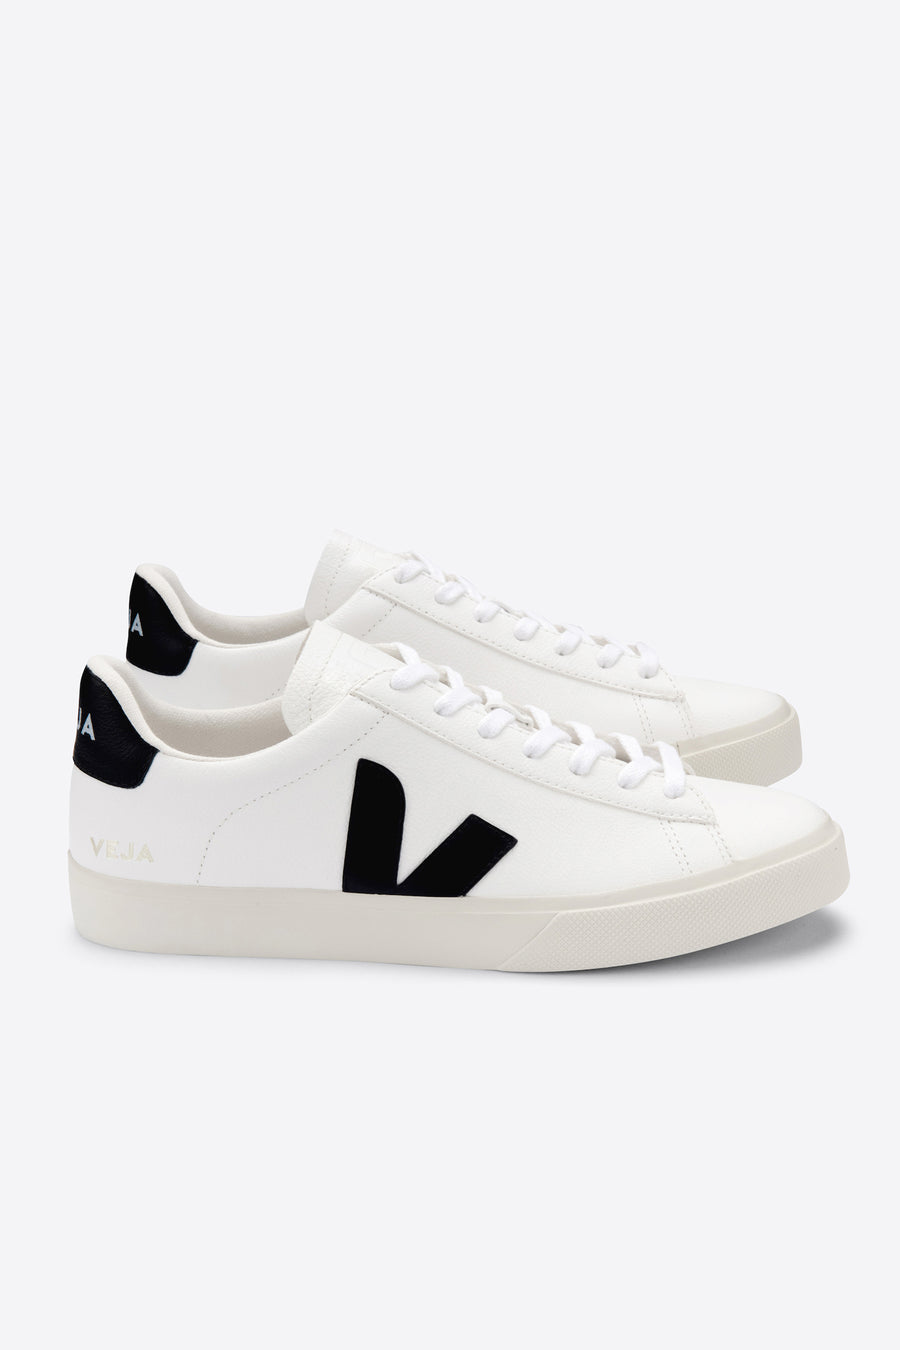 Veja Campo Sneaker - White and Black